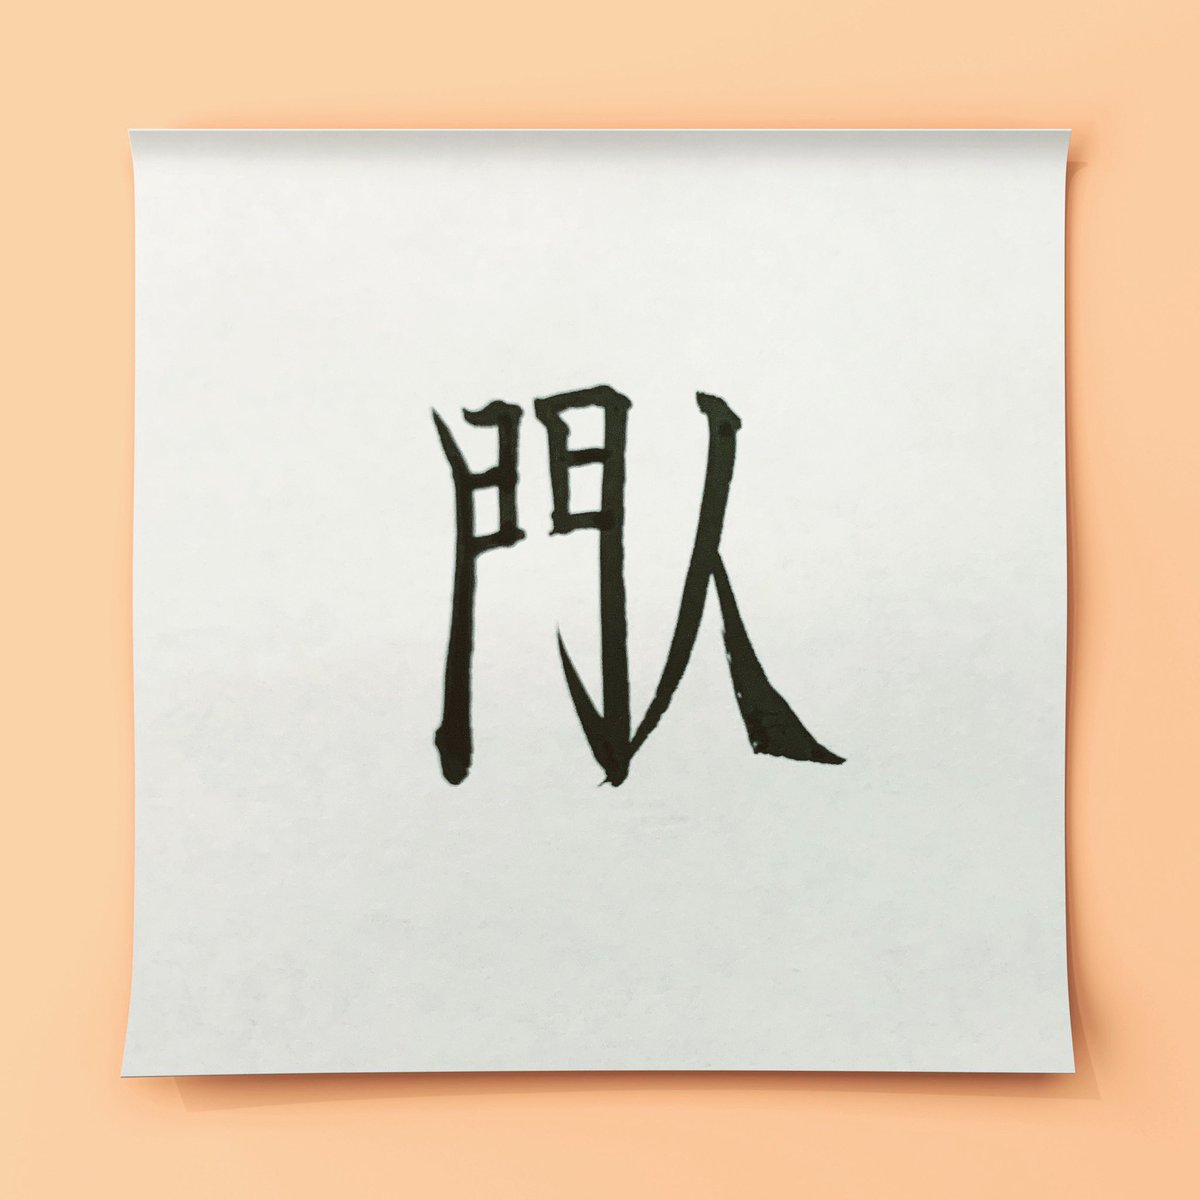 する とびだし っ て ものかげ ときには から ひと を きゅう おどろか こえ せる に 読みが最長の漢字について 世の中には、「ものかげからきゅうにとびだ